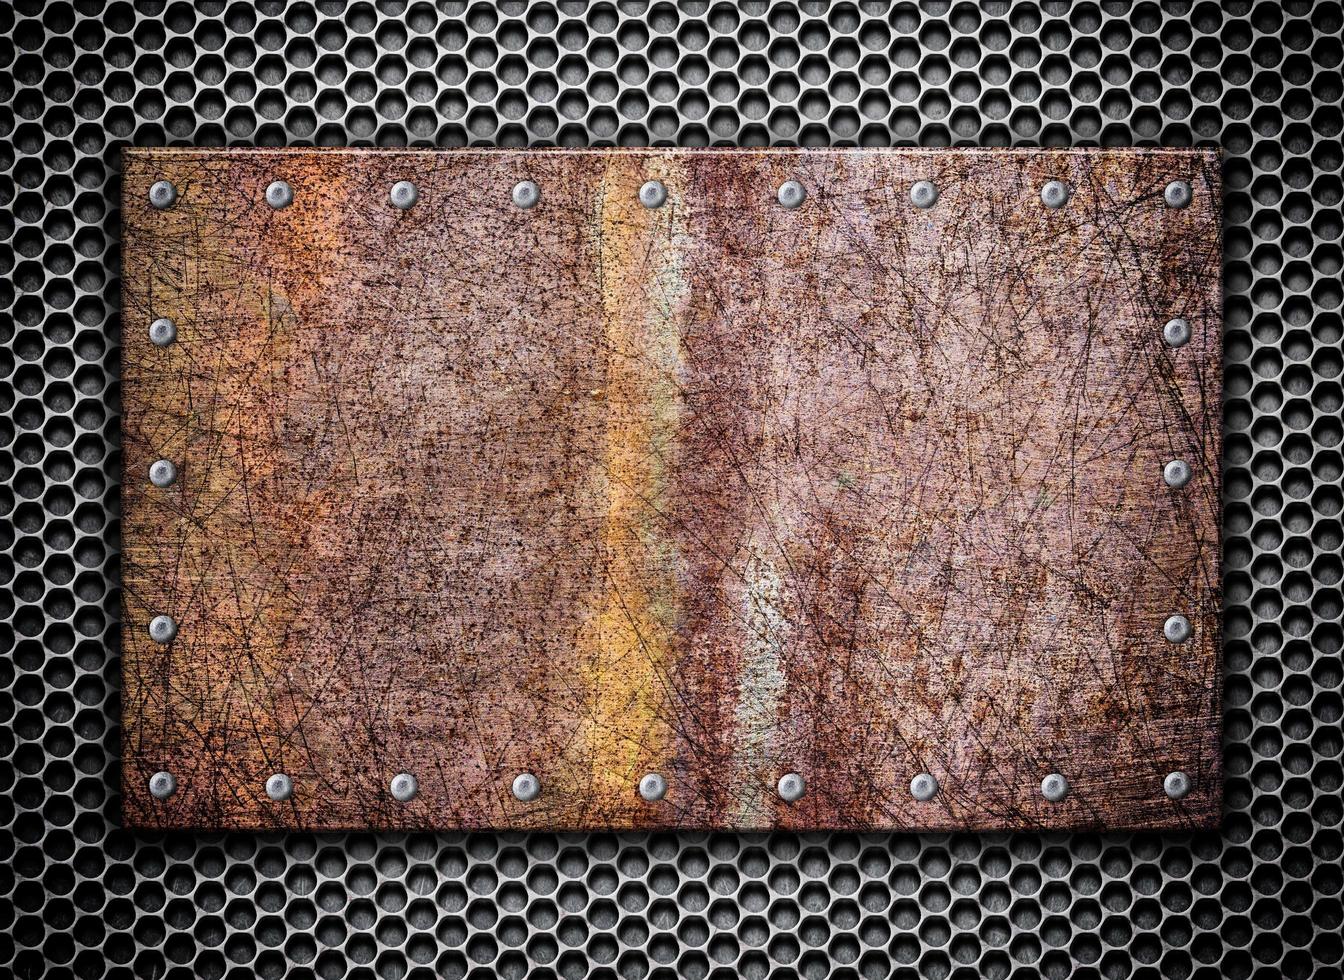 trama griglia metallica arrugginita sullo sfondo, 3d, illustrazione foto